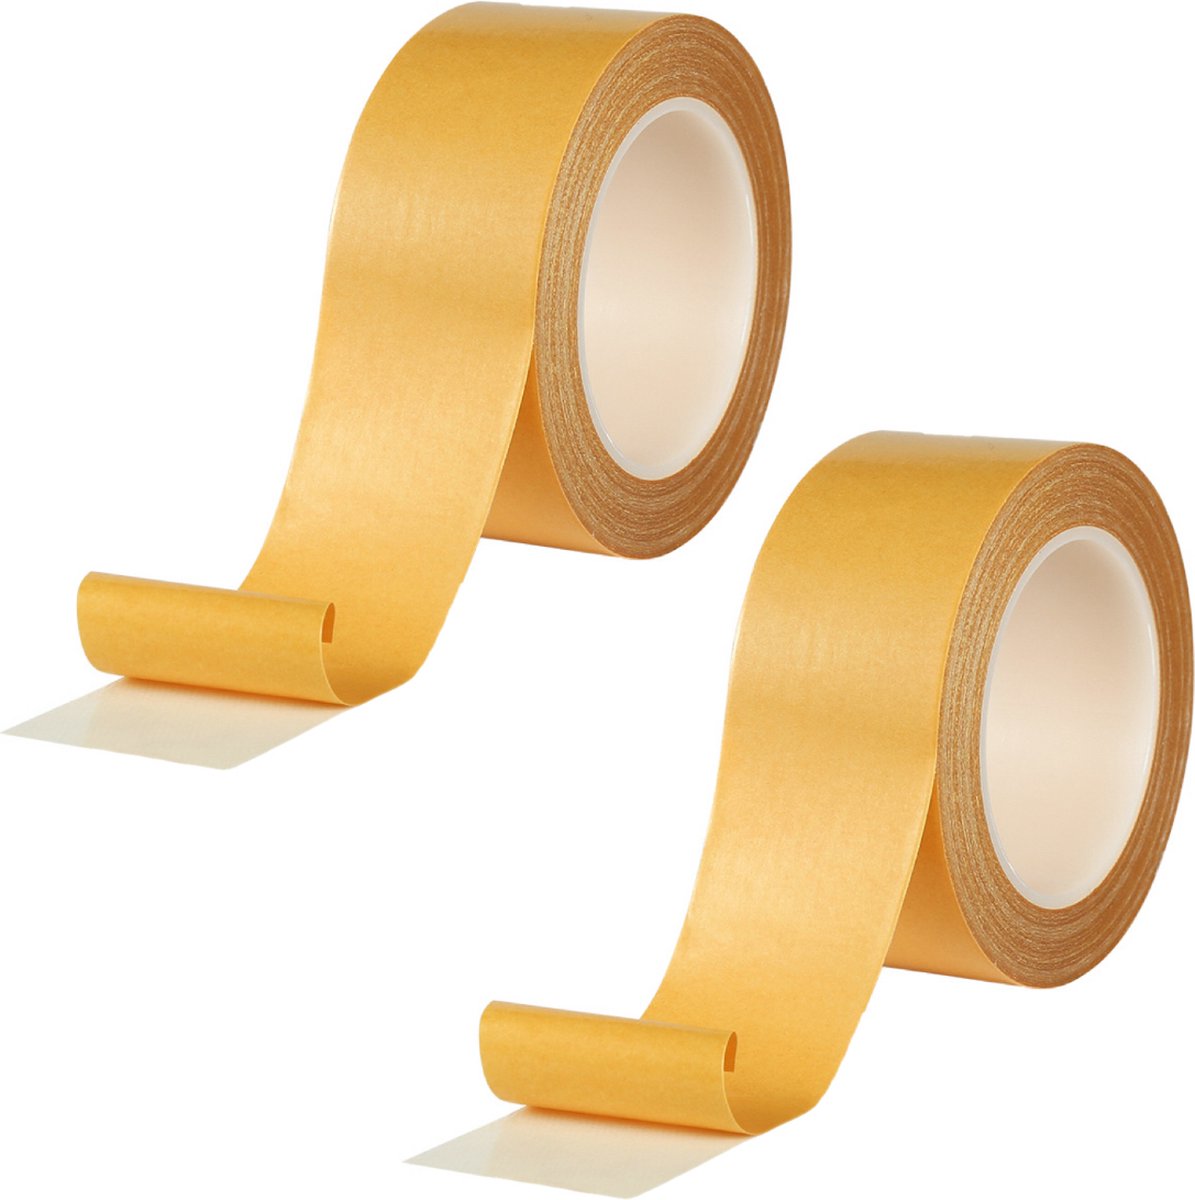 Dubbelzijdige tape - Dubbelzijdig plakband - 30 mm × 20 m  - 2 rollen - Dubbelzijdig tape extra sterk - Dubbelzijdige weefseltape - Tapijttape - 280 µm - Merkloos